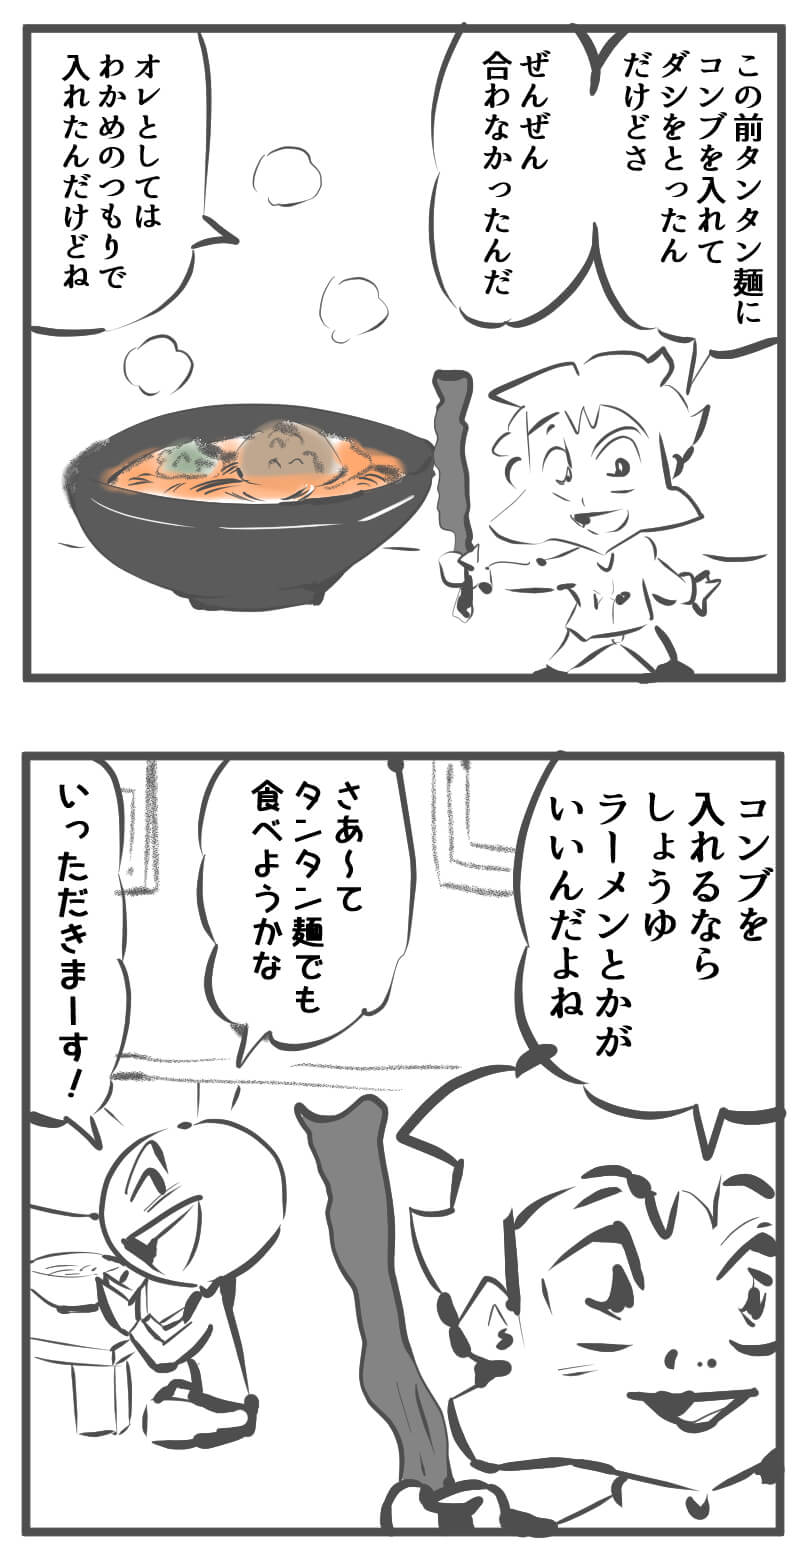 タンタン麺,4コマ漫画